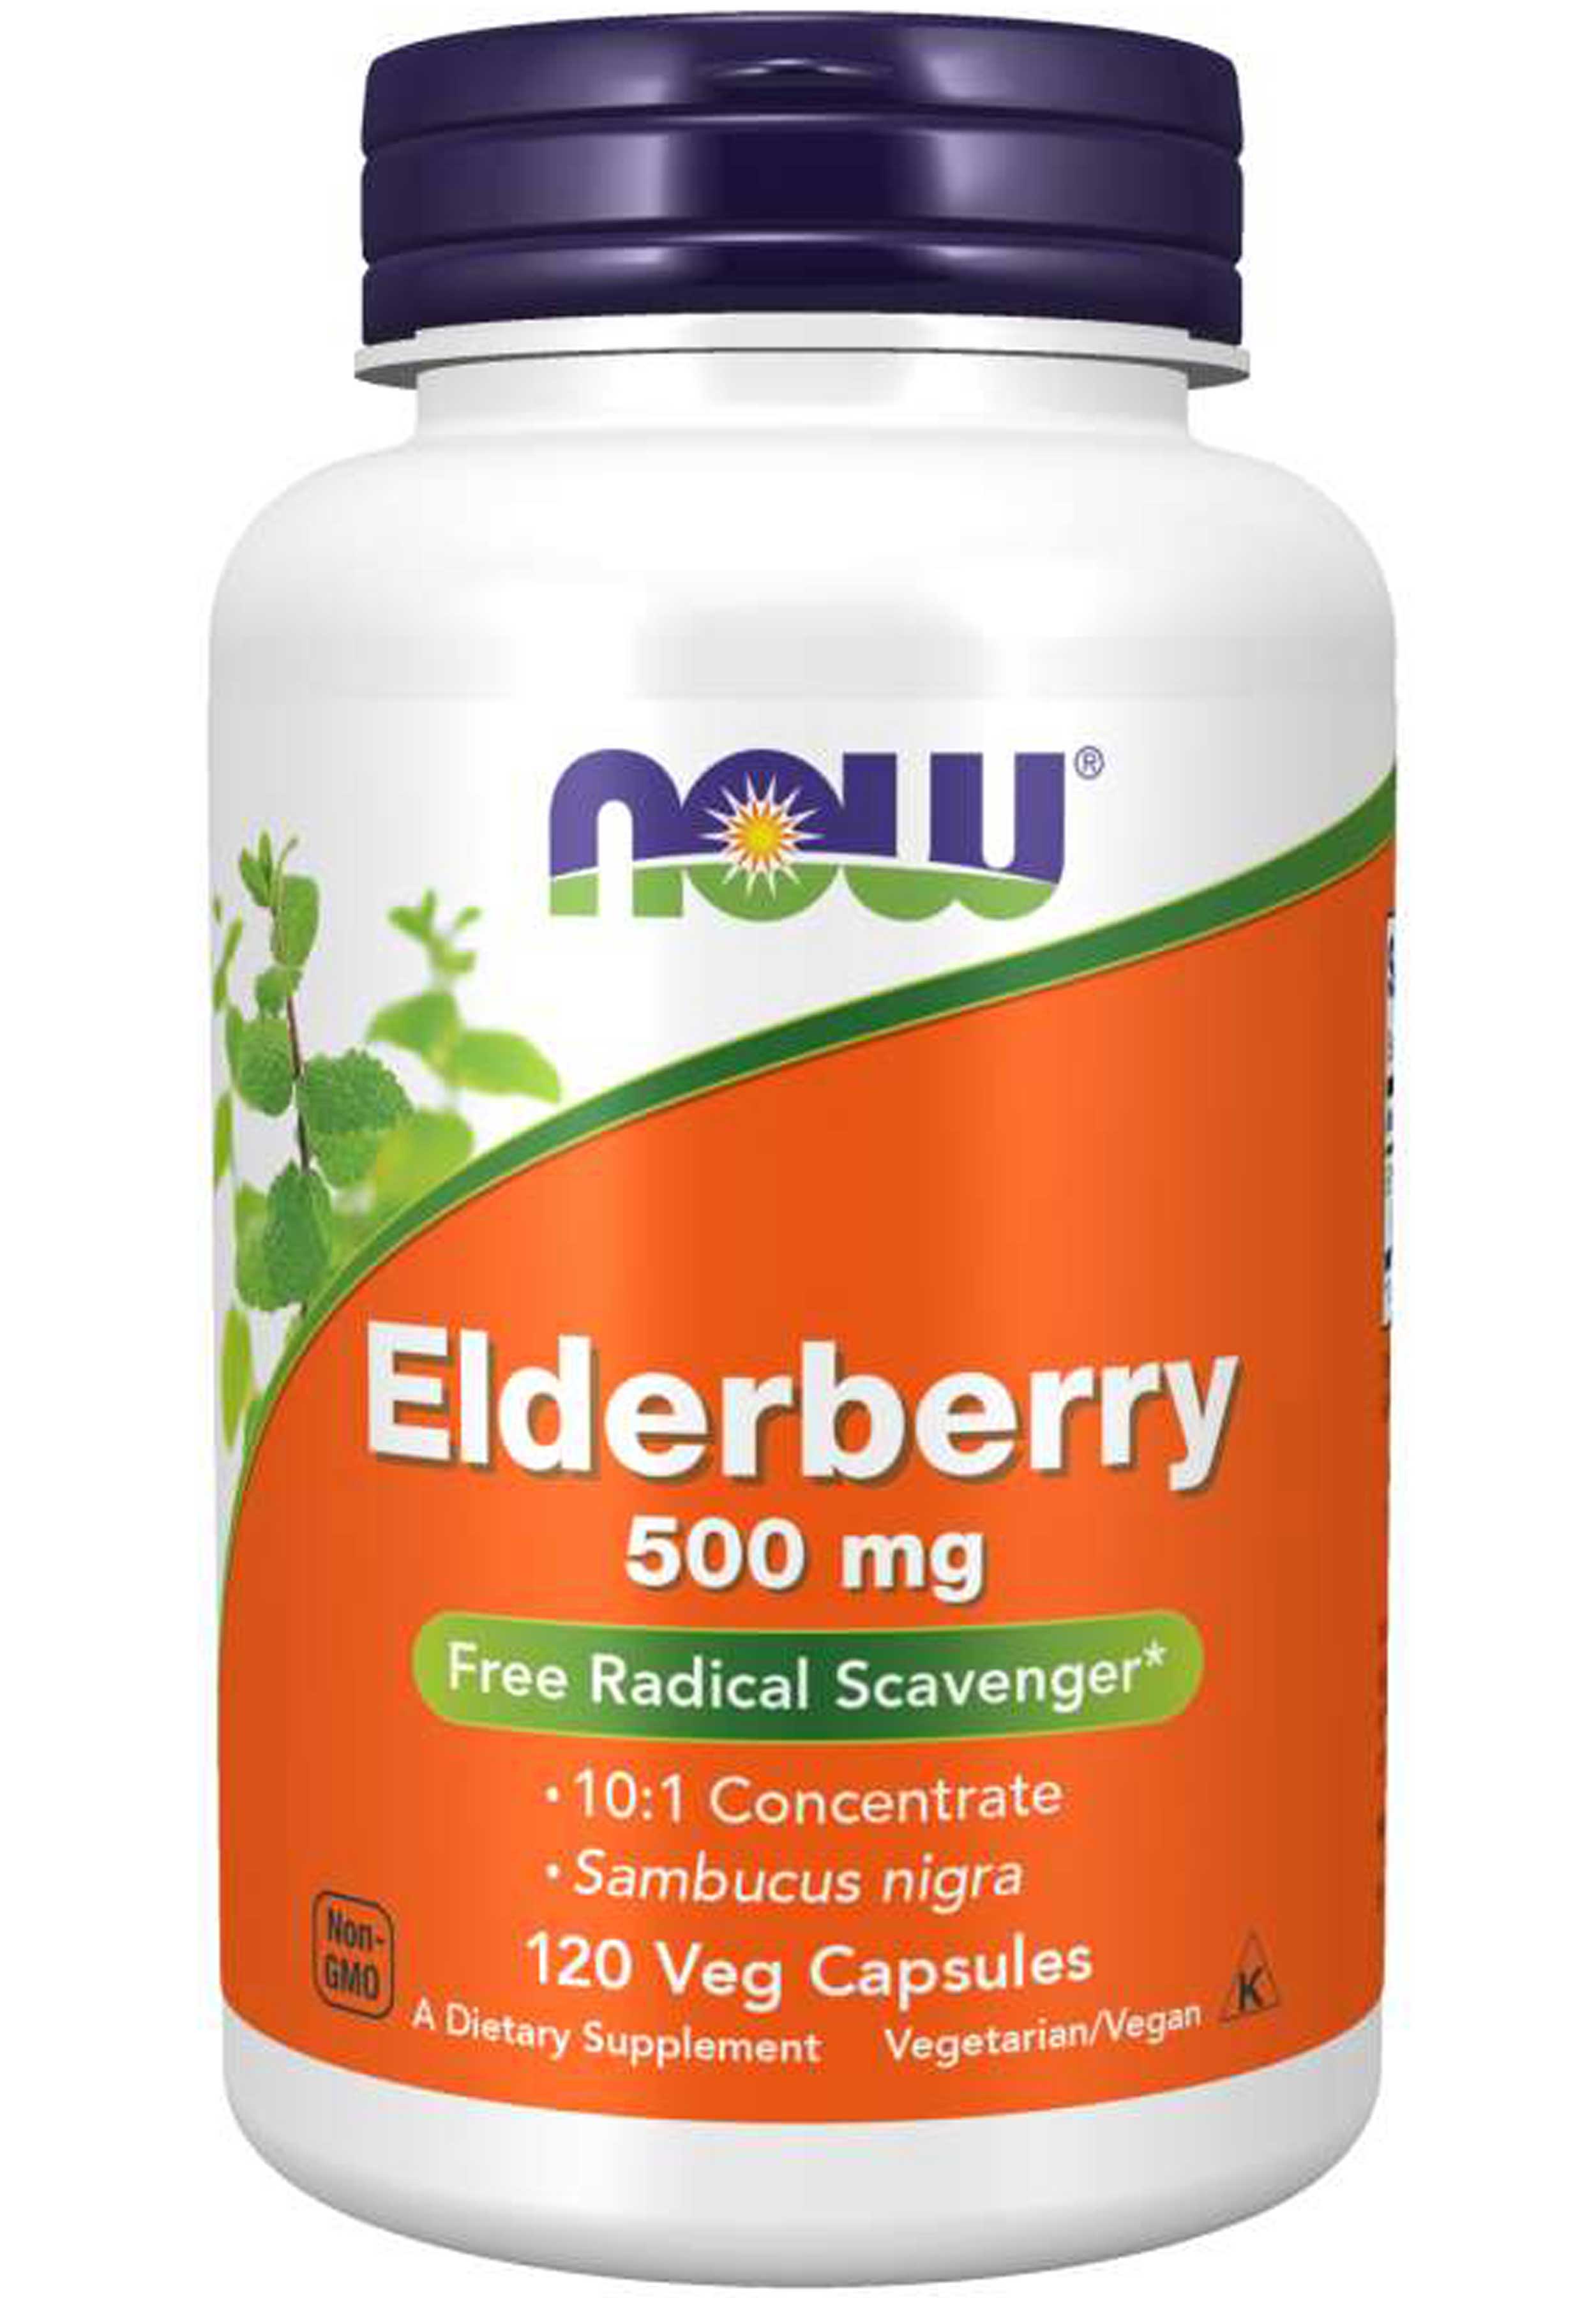 NOW Elderberry Extract 500 mg